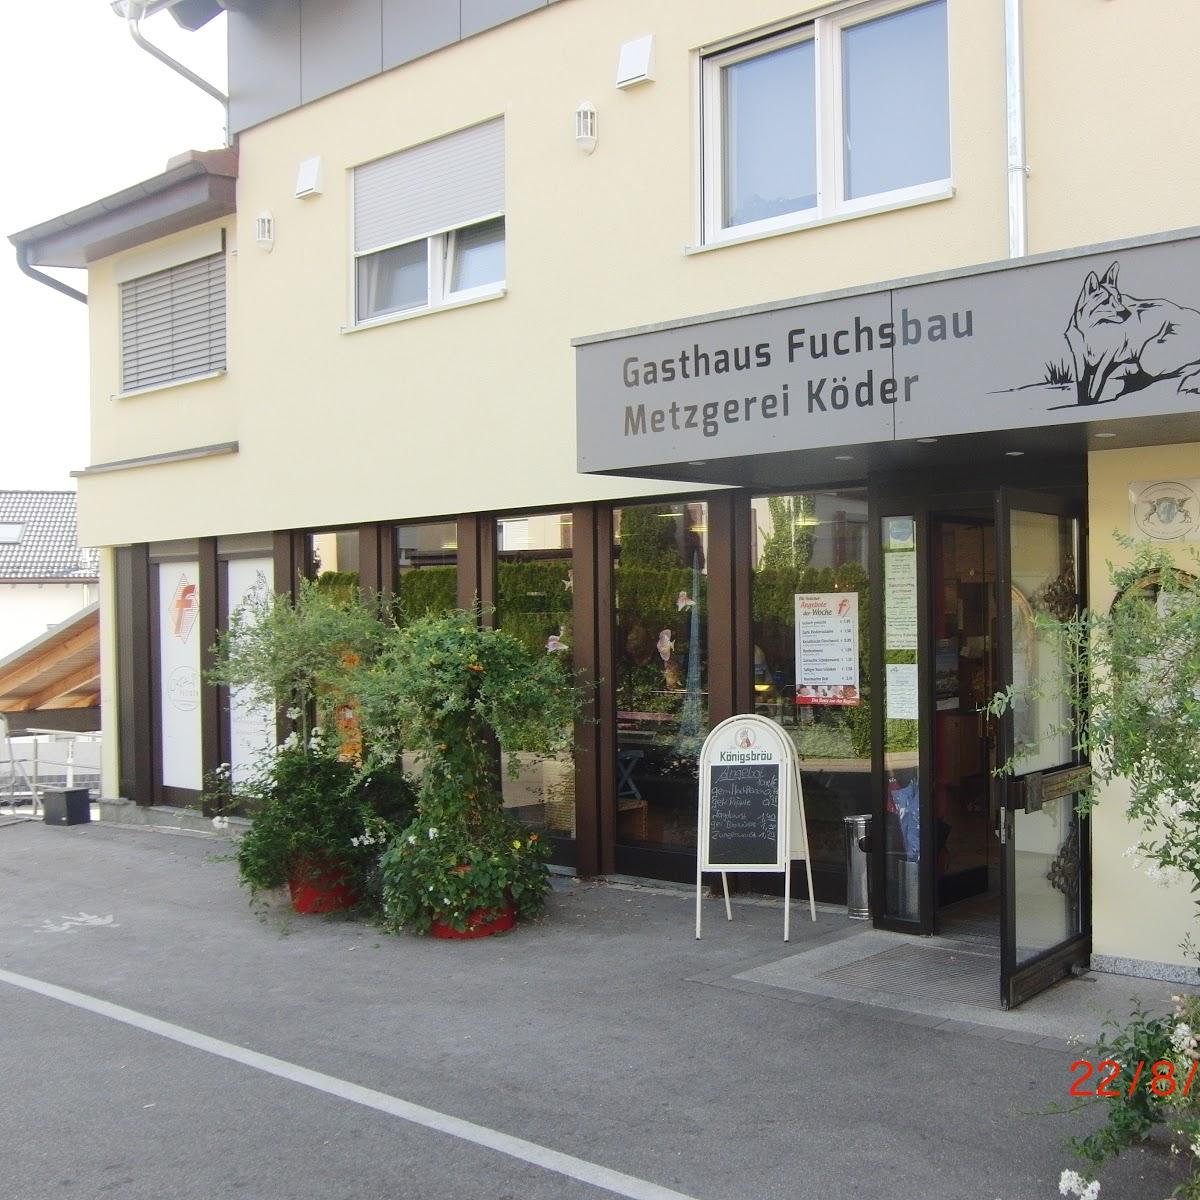 Restaurant "Gasthaus Fuchsbau - Metzgerei Köder GmbH" in  Aalen